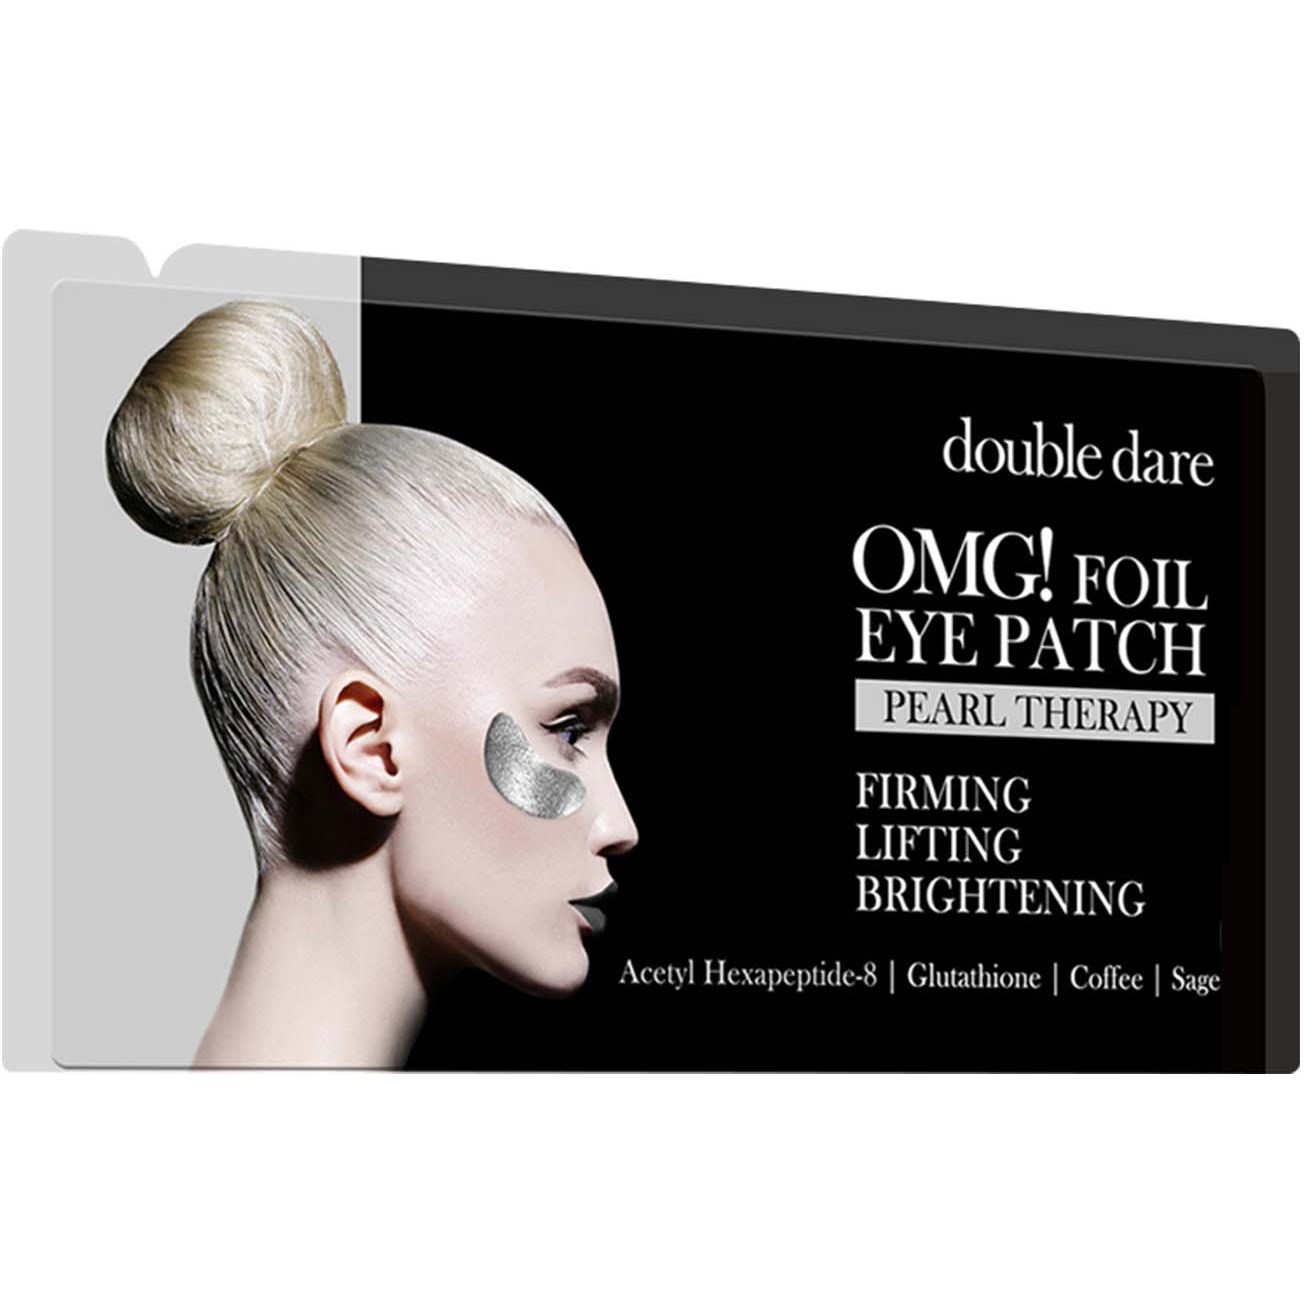 Bilde av Omg! Double Dare Foil Eye Patch Pearl Therapy